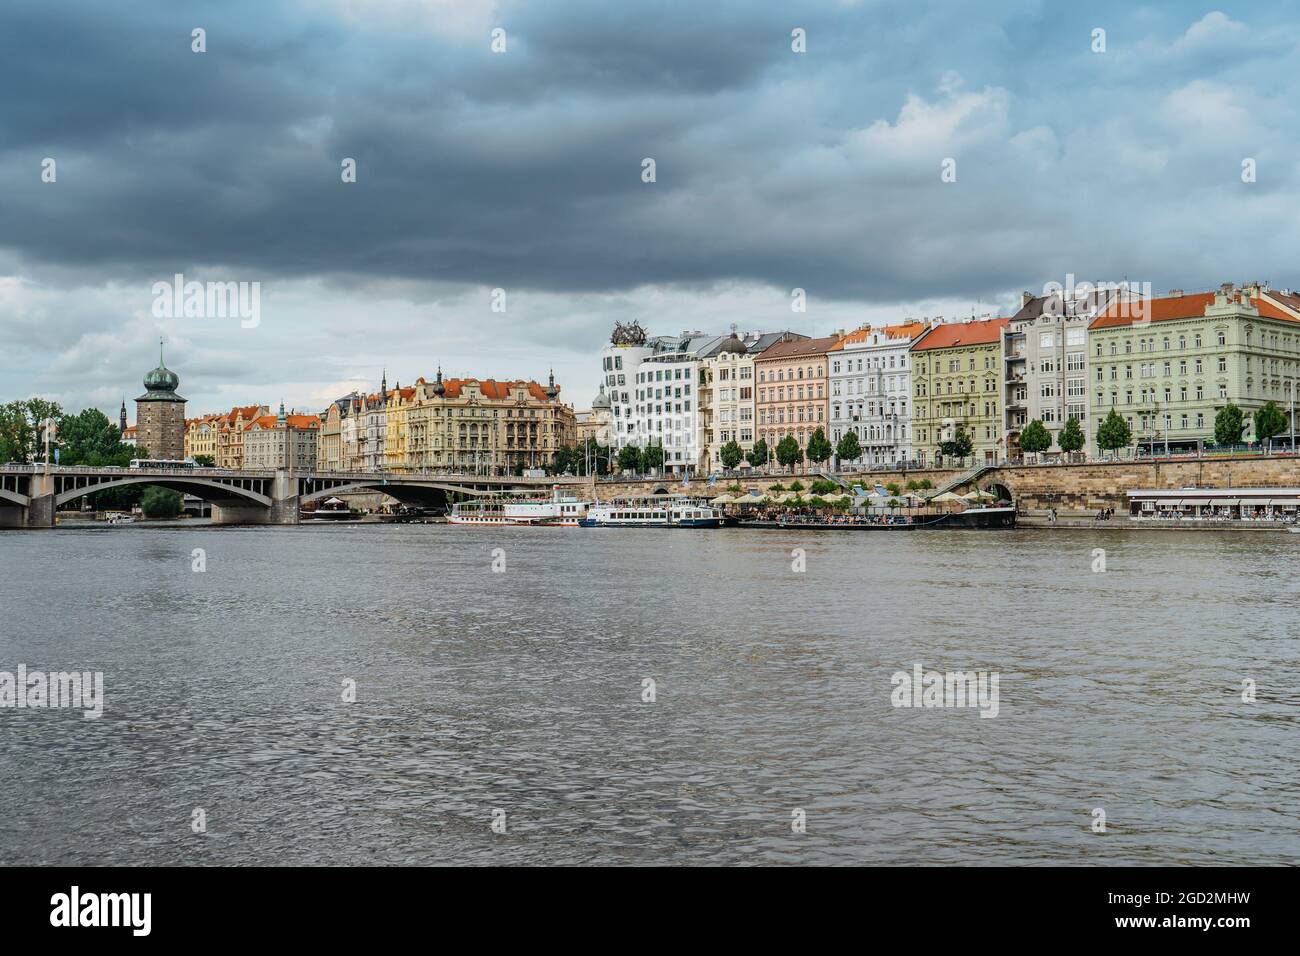 Praga, República Checa.Vista increíble de la famosa Casa de baile y el dique Rasin. Edificios coloridos frente al río, puente sobre el río Vltava, barcos. Foto de stock